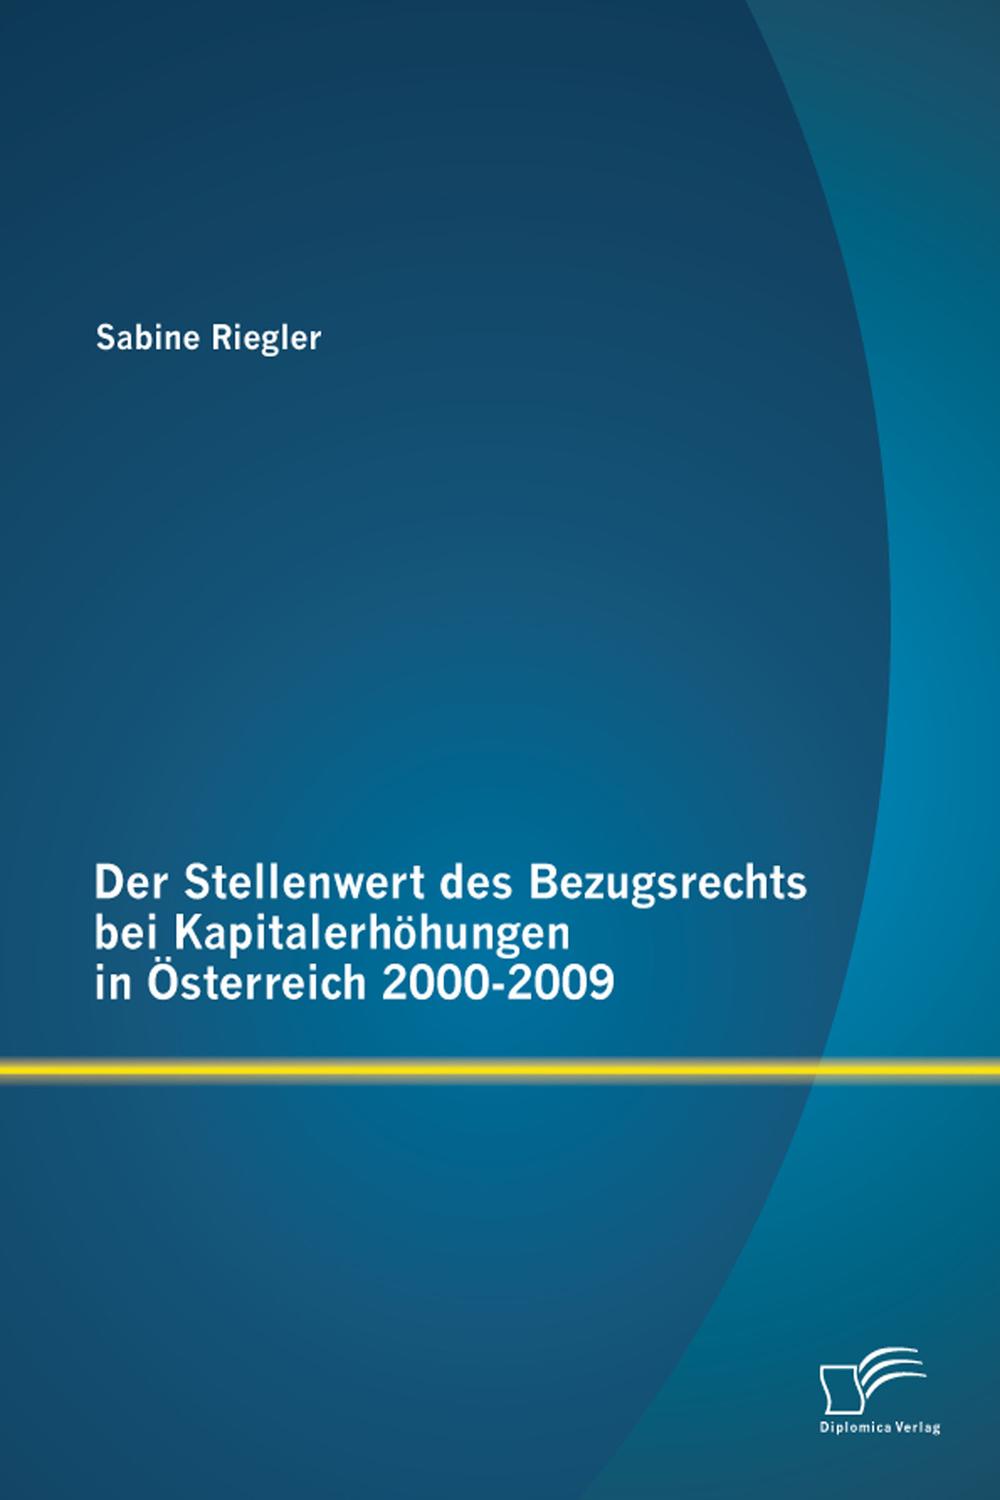 Der Stellenwert des Bezugsrechts bei Kapitalerhöhungen in Österreich 2000-2009 - Sabine Riegler